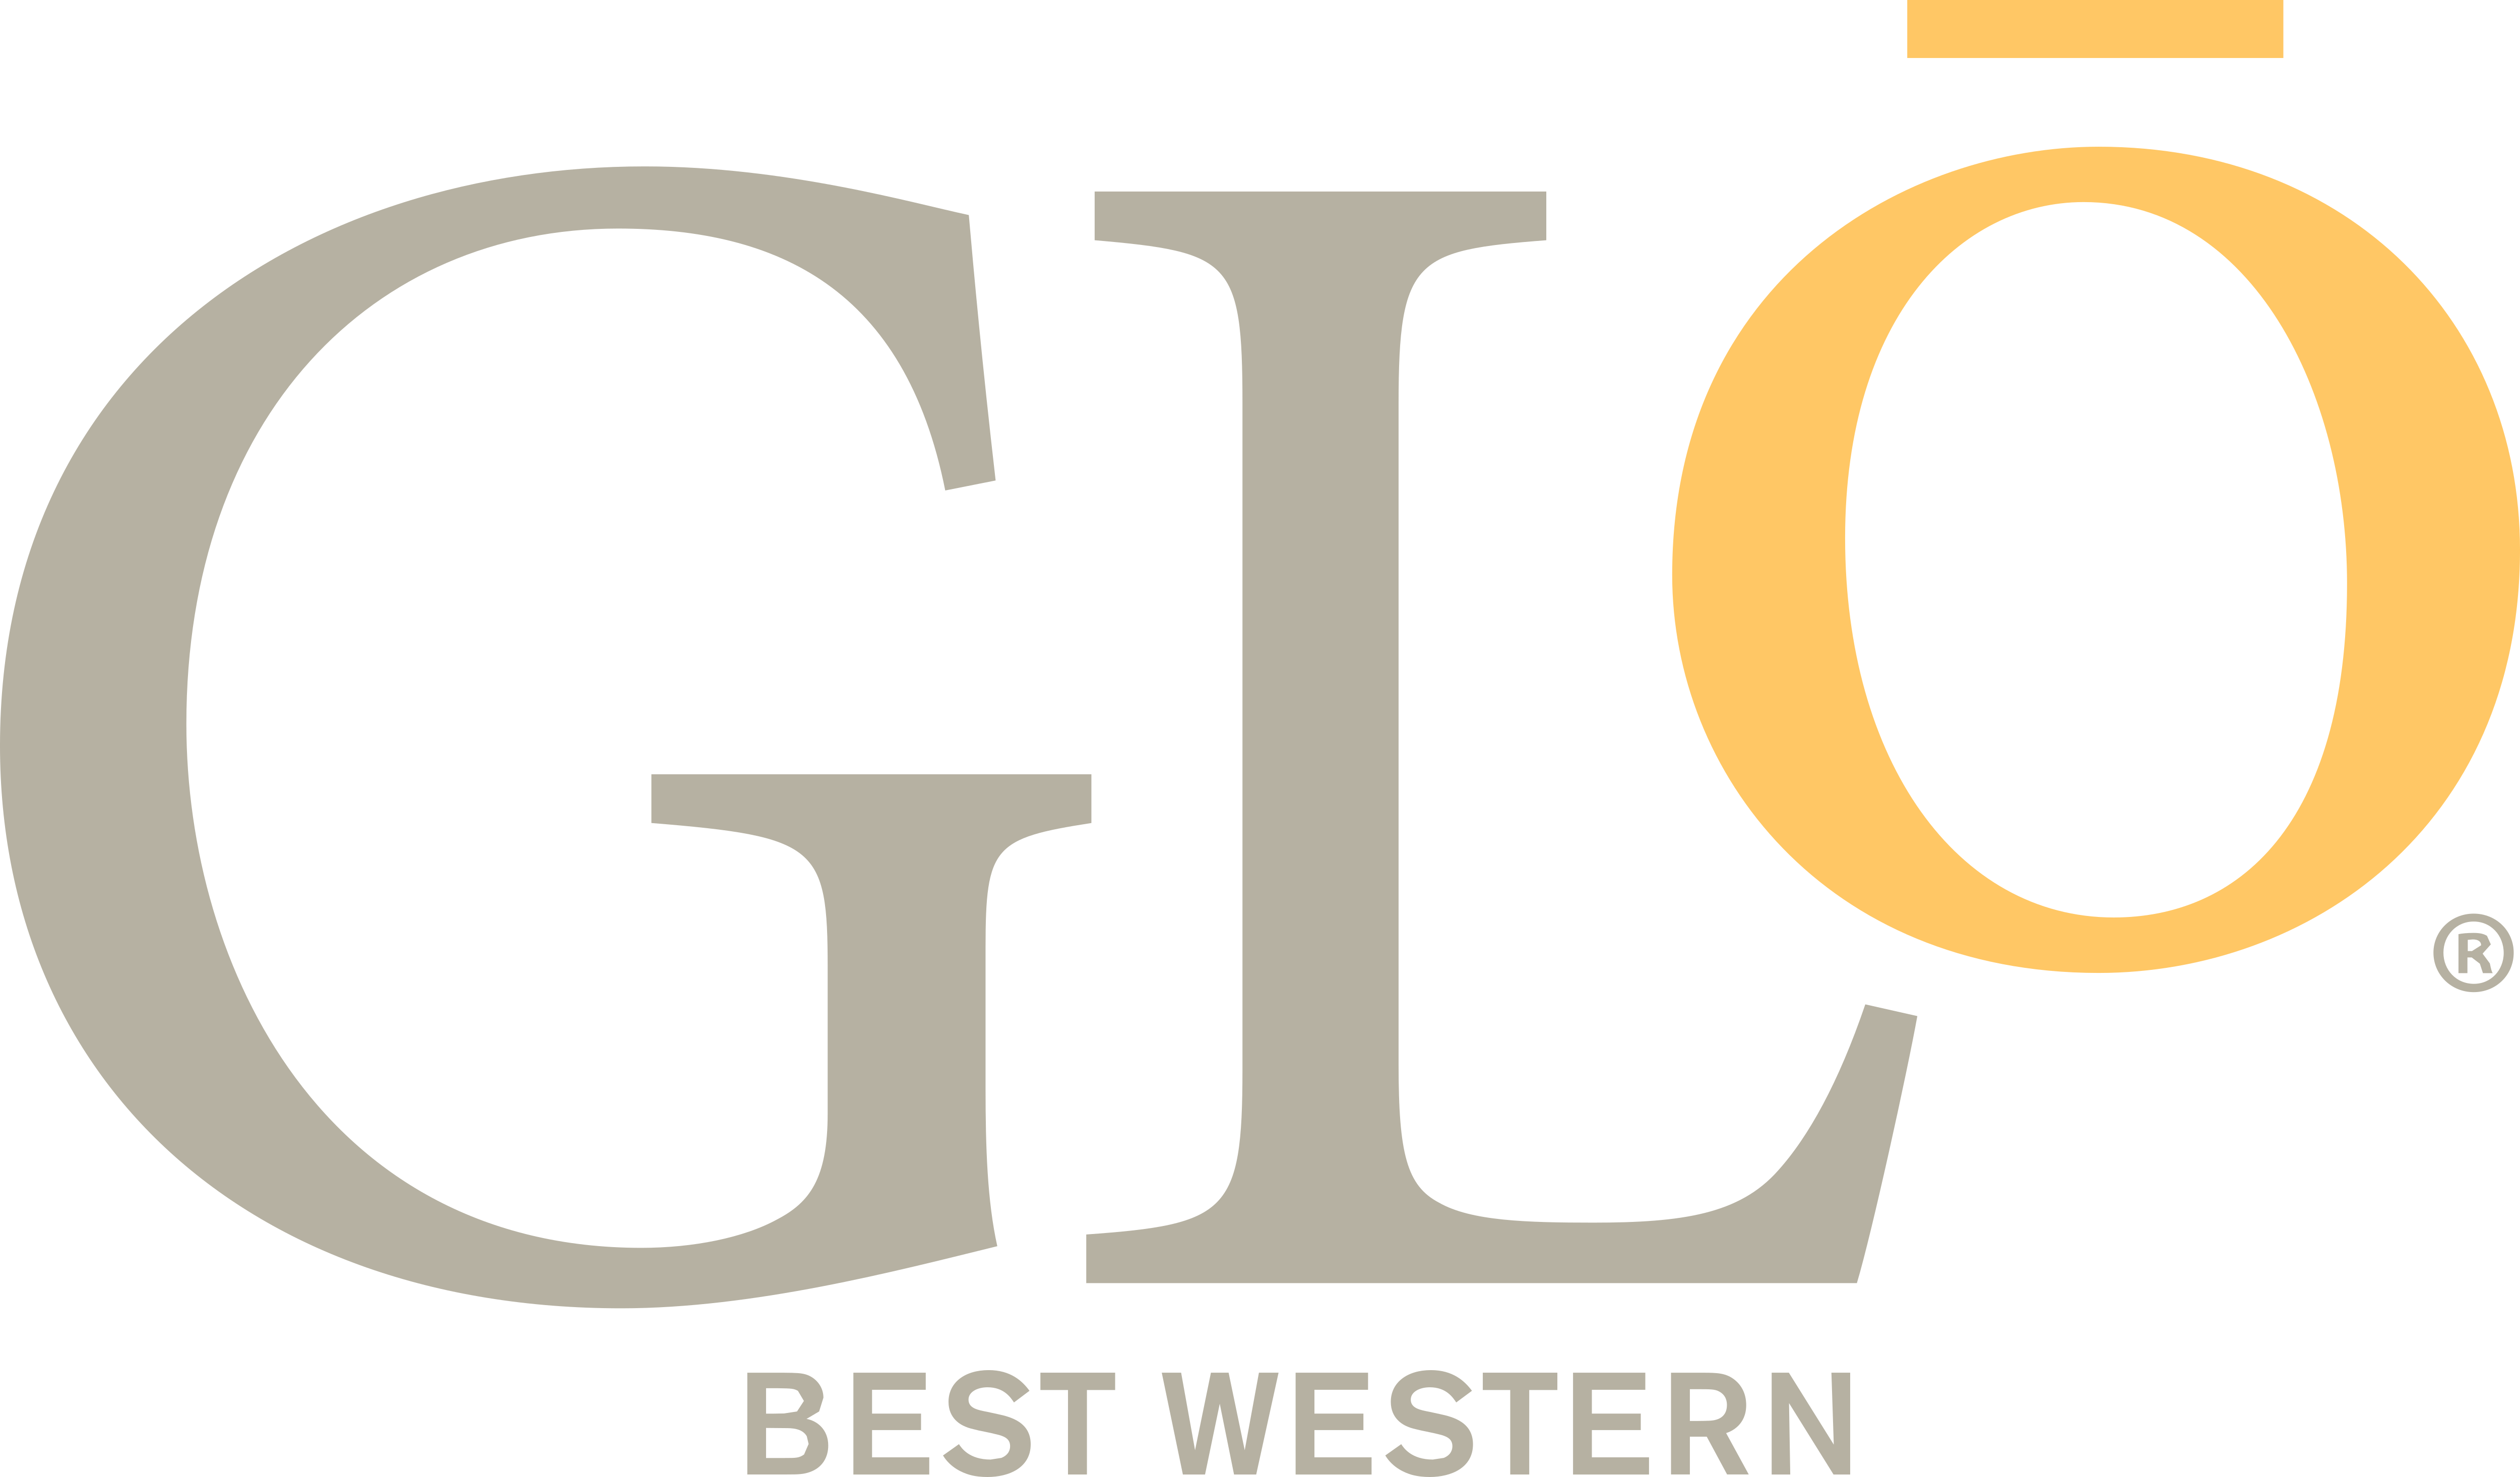 Glo Logo - Best Western Glo – Logos Download